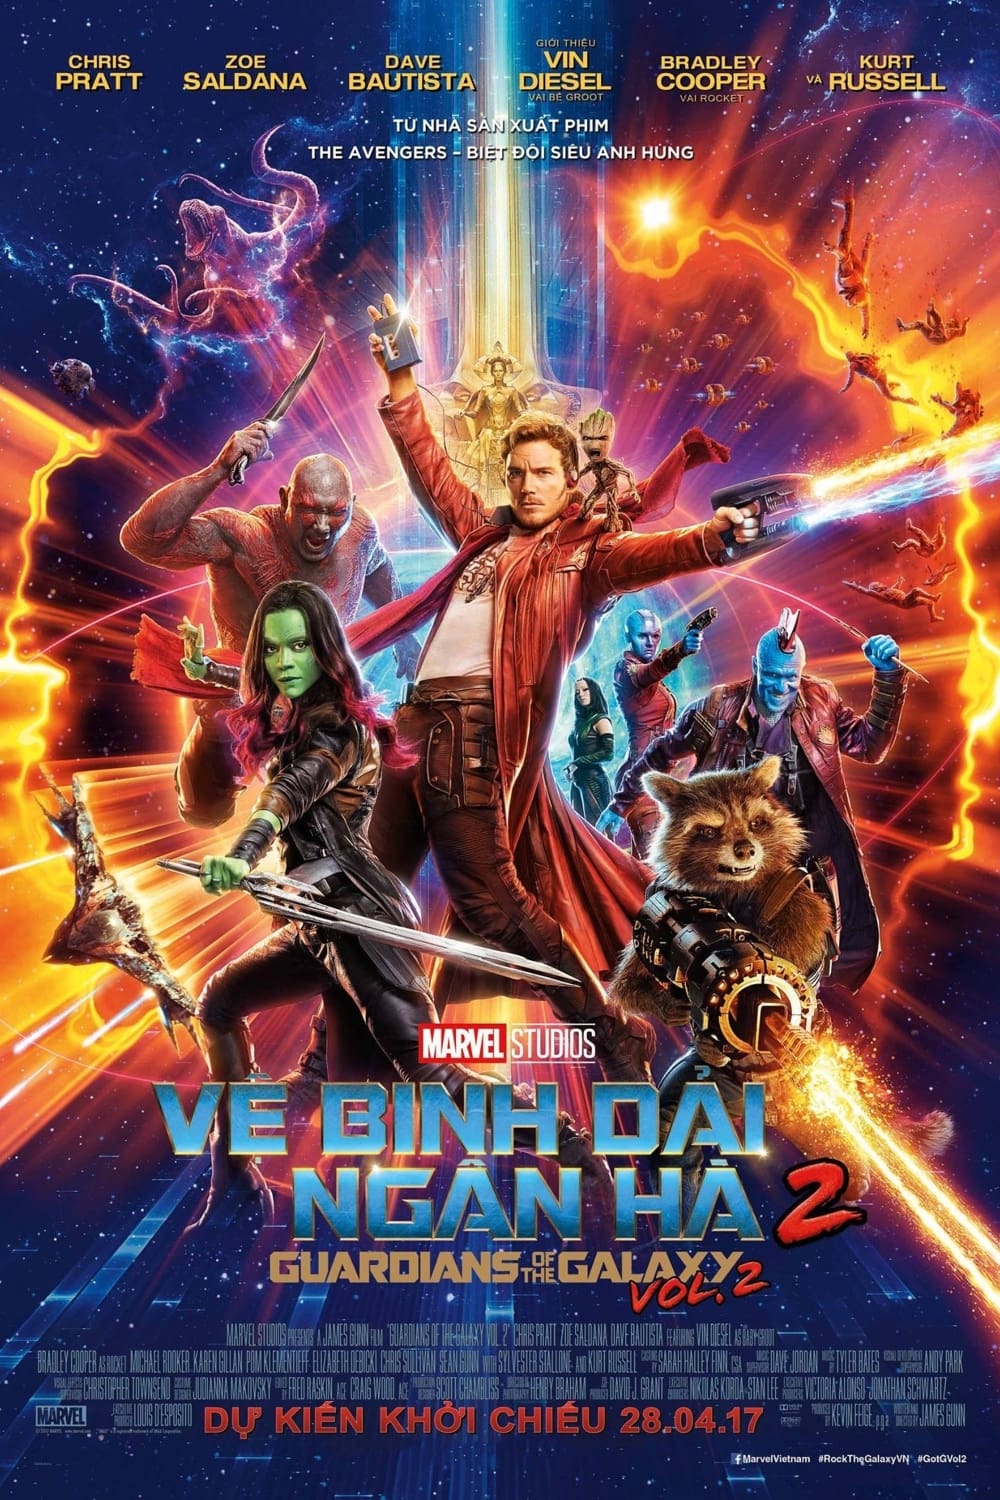 Vệ Binh Dải Ngân Hà 2 - Guardians of the Galaxy Vol. 2 (2017)